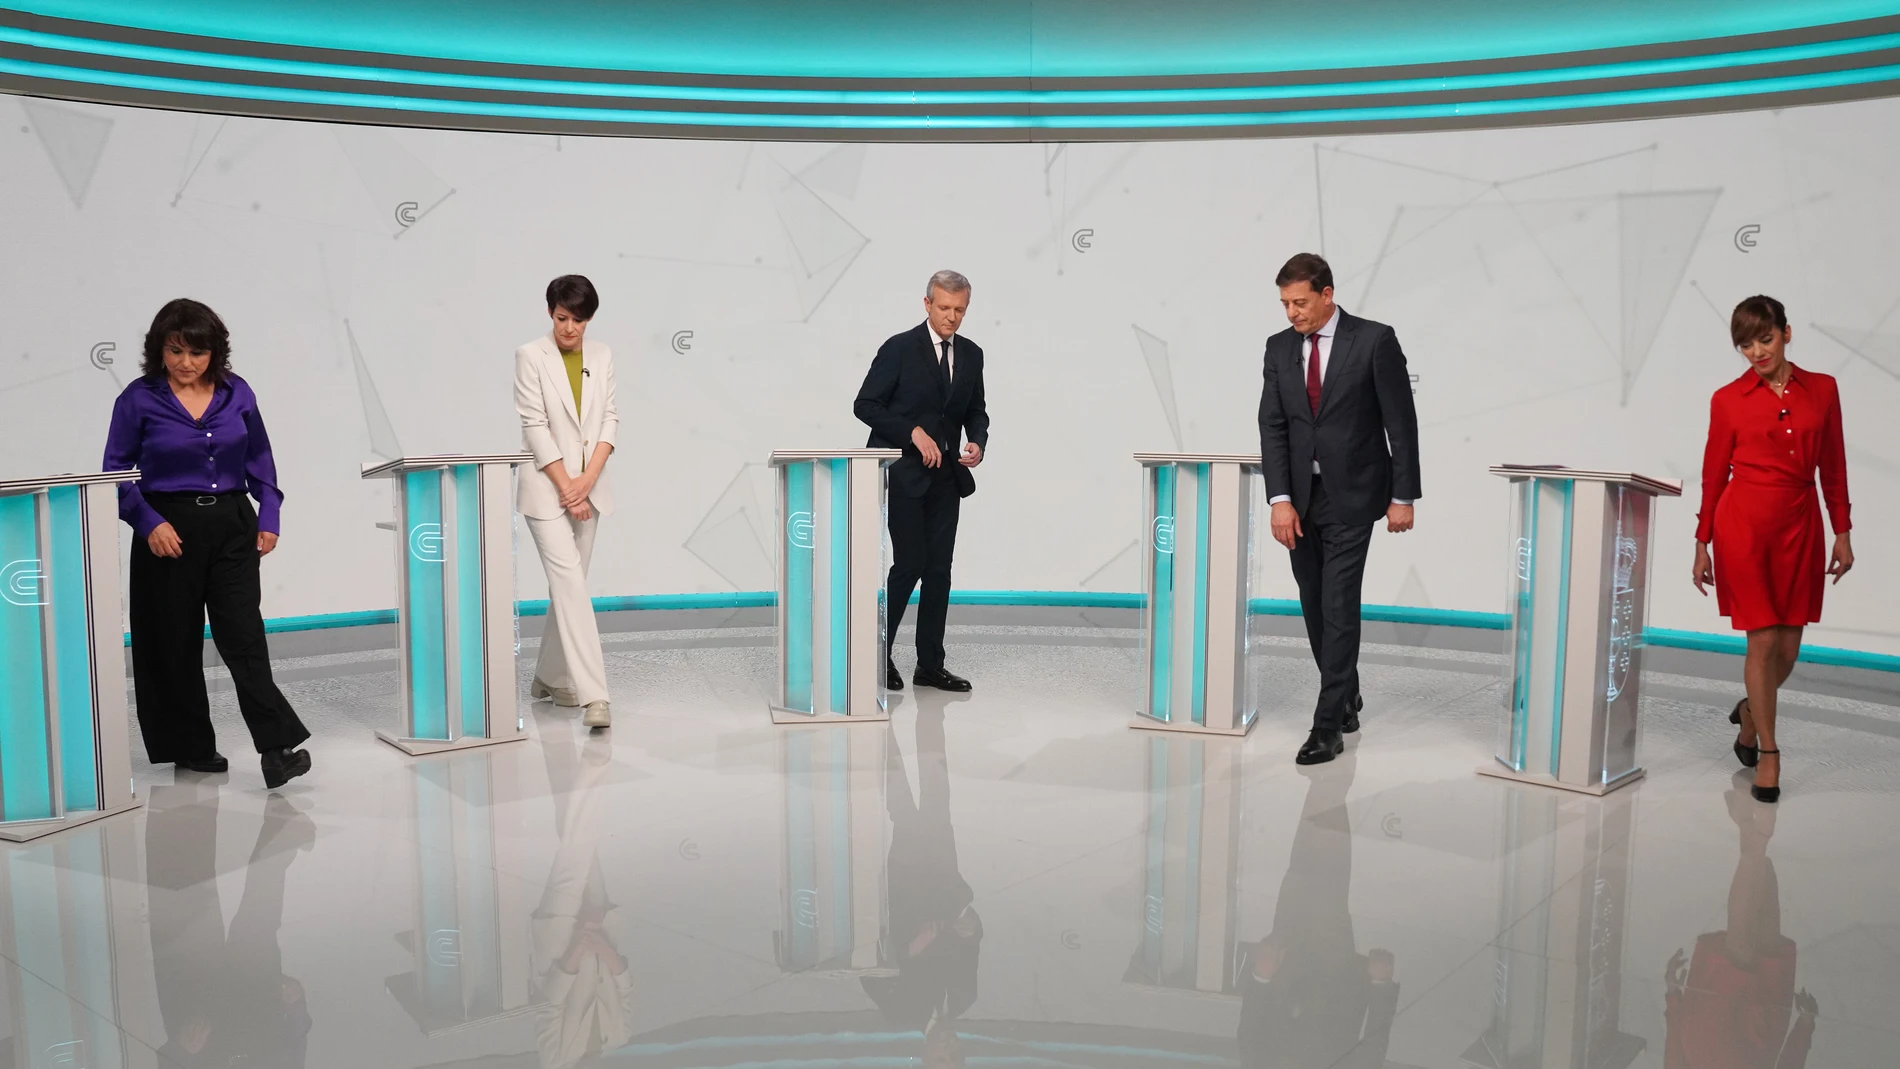 Los candidatos en el debate electoral de la Corporación Radio Televisión de Galicia (CRVTG).